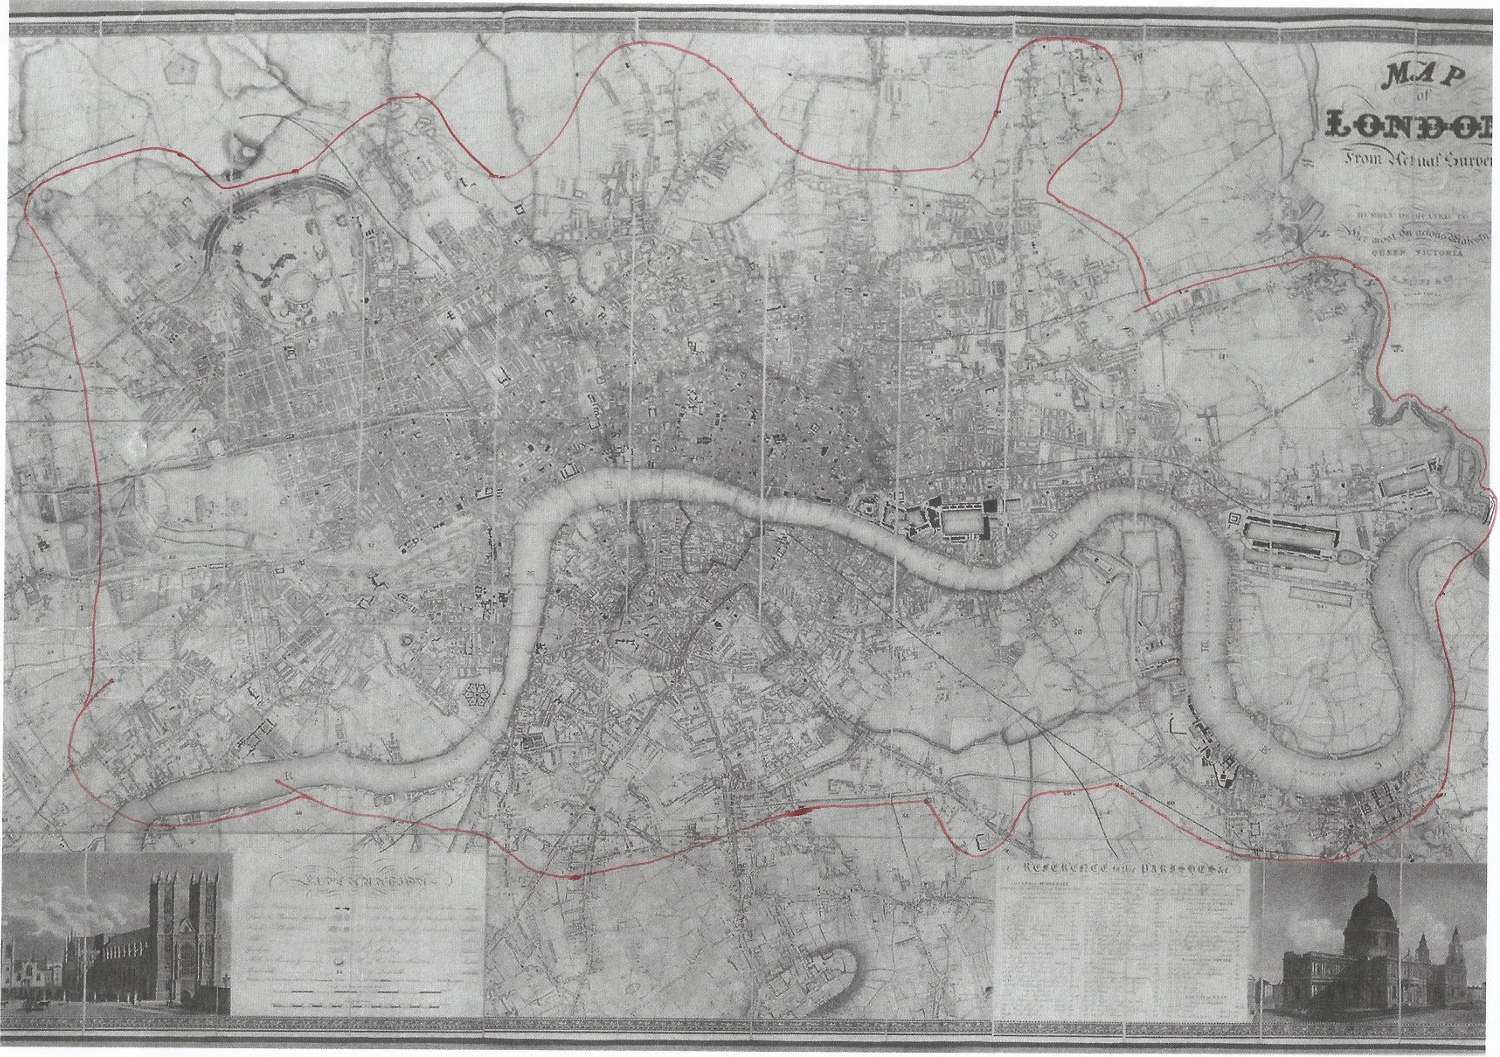 LONDON 1840 colour map